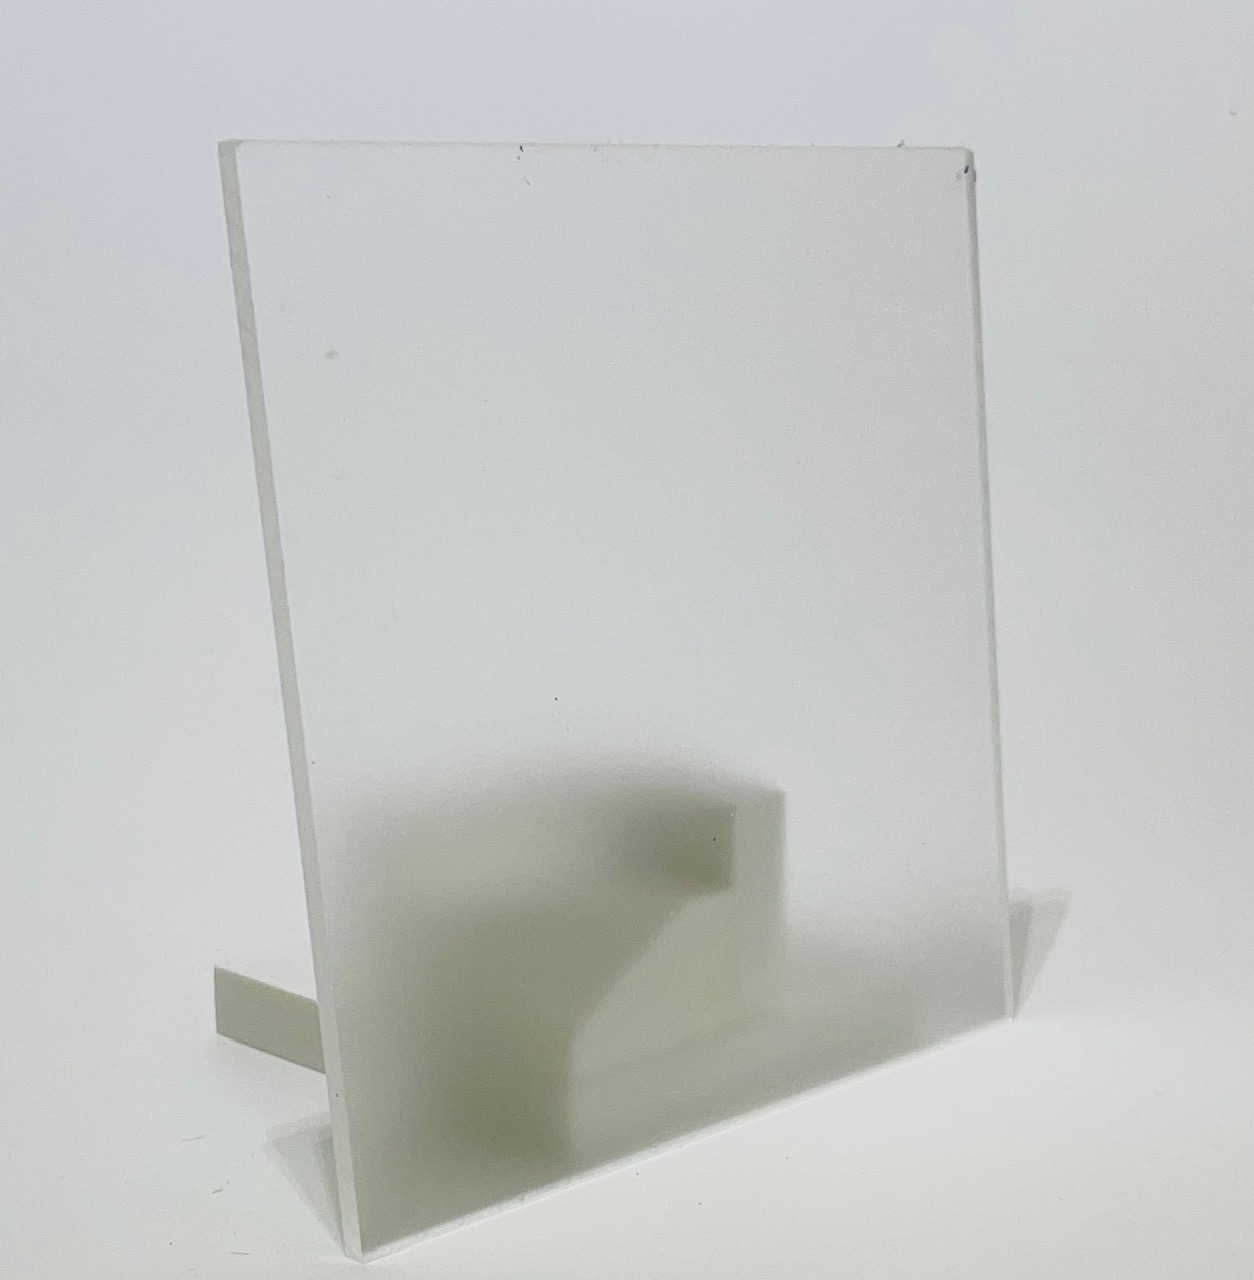 Panneau acrylique transparent (épaisseur de panneau : 2, 3, 5mm) de HILOGIK